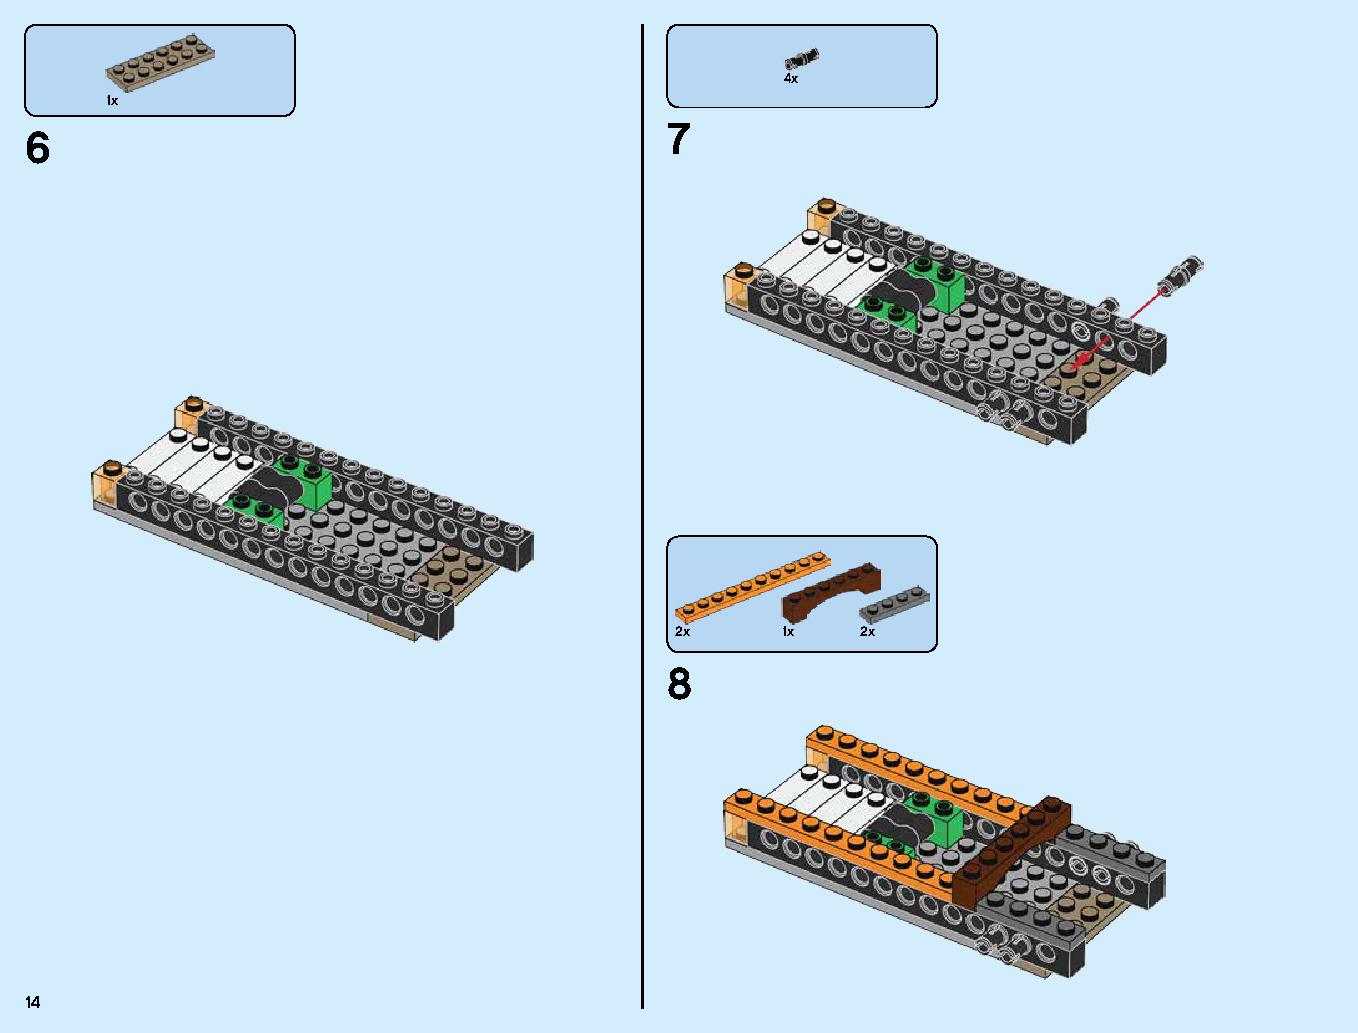 ハンティング・デスストライカー 70654 レゴの商品情報 レゴの説明書・組立方法 14 page